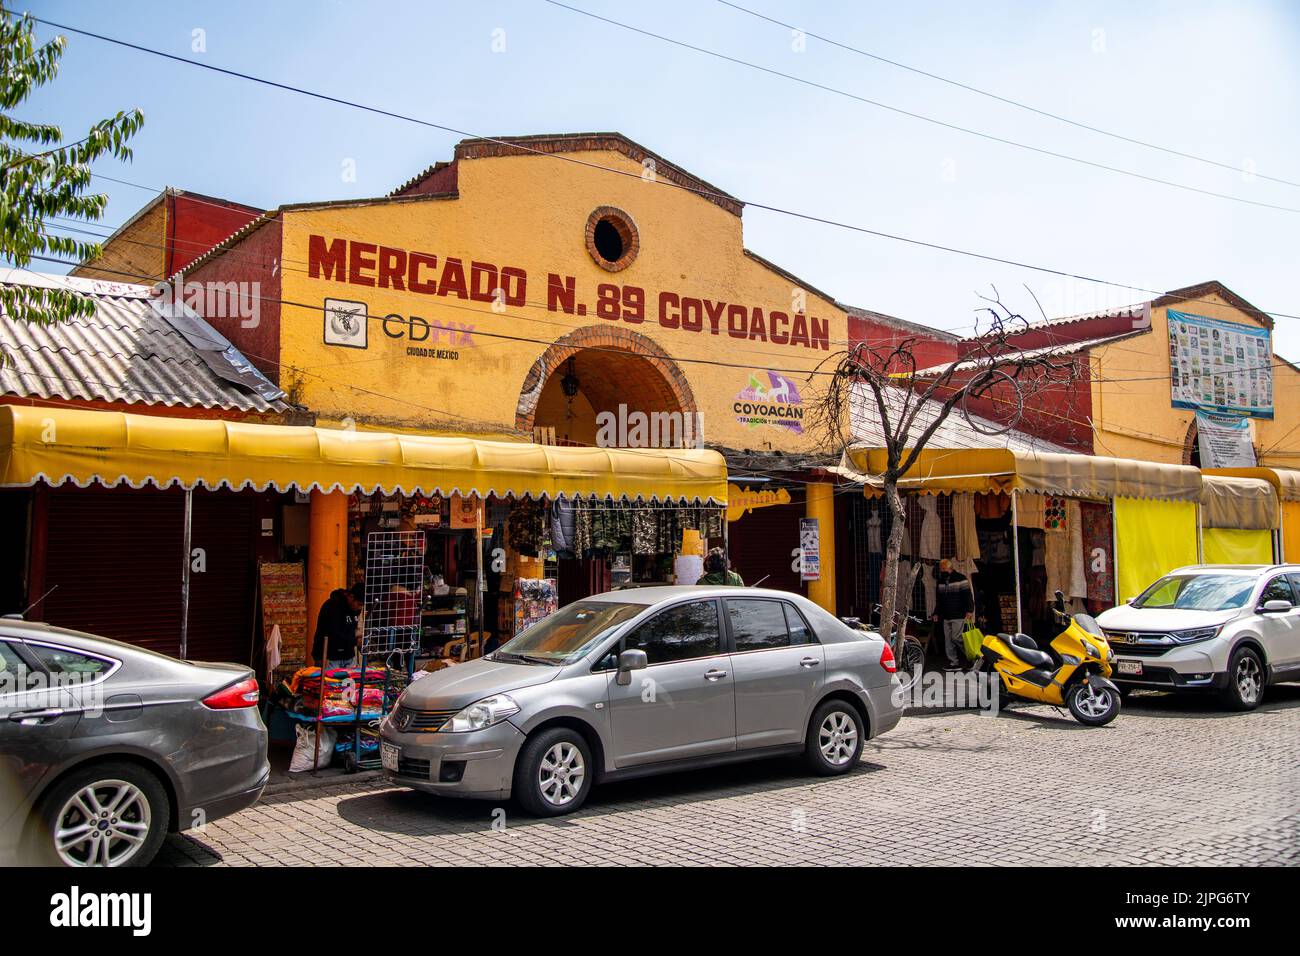 An entrance to Mercado Coyoacan in Coyoacan, Mexico City, Mexico Stock Photo